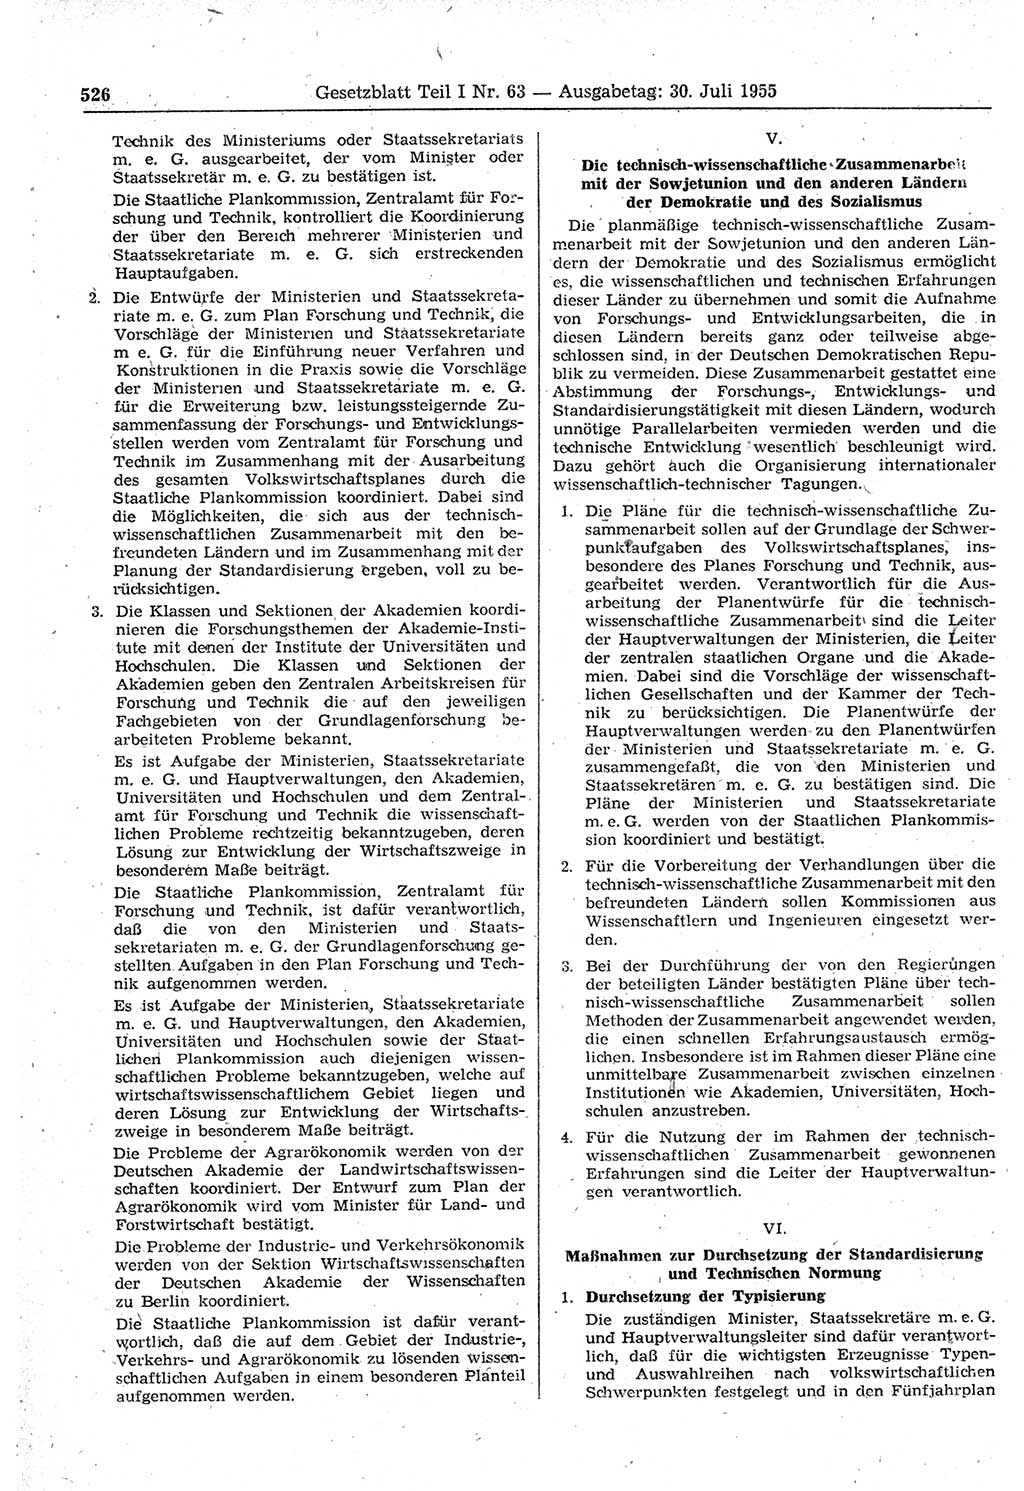 Gesetzblatt (GBl.) der Deutschen Demokratischen Republik (DDR) Teil Ⅰ 1955, Seite 526 (GBl. DDR Ⅰ 1955, S. 526)